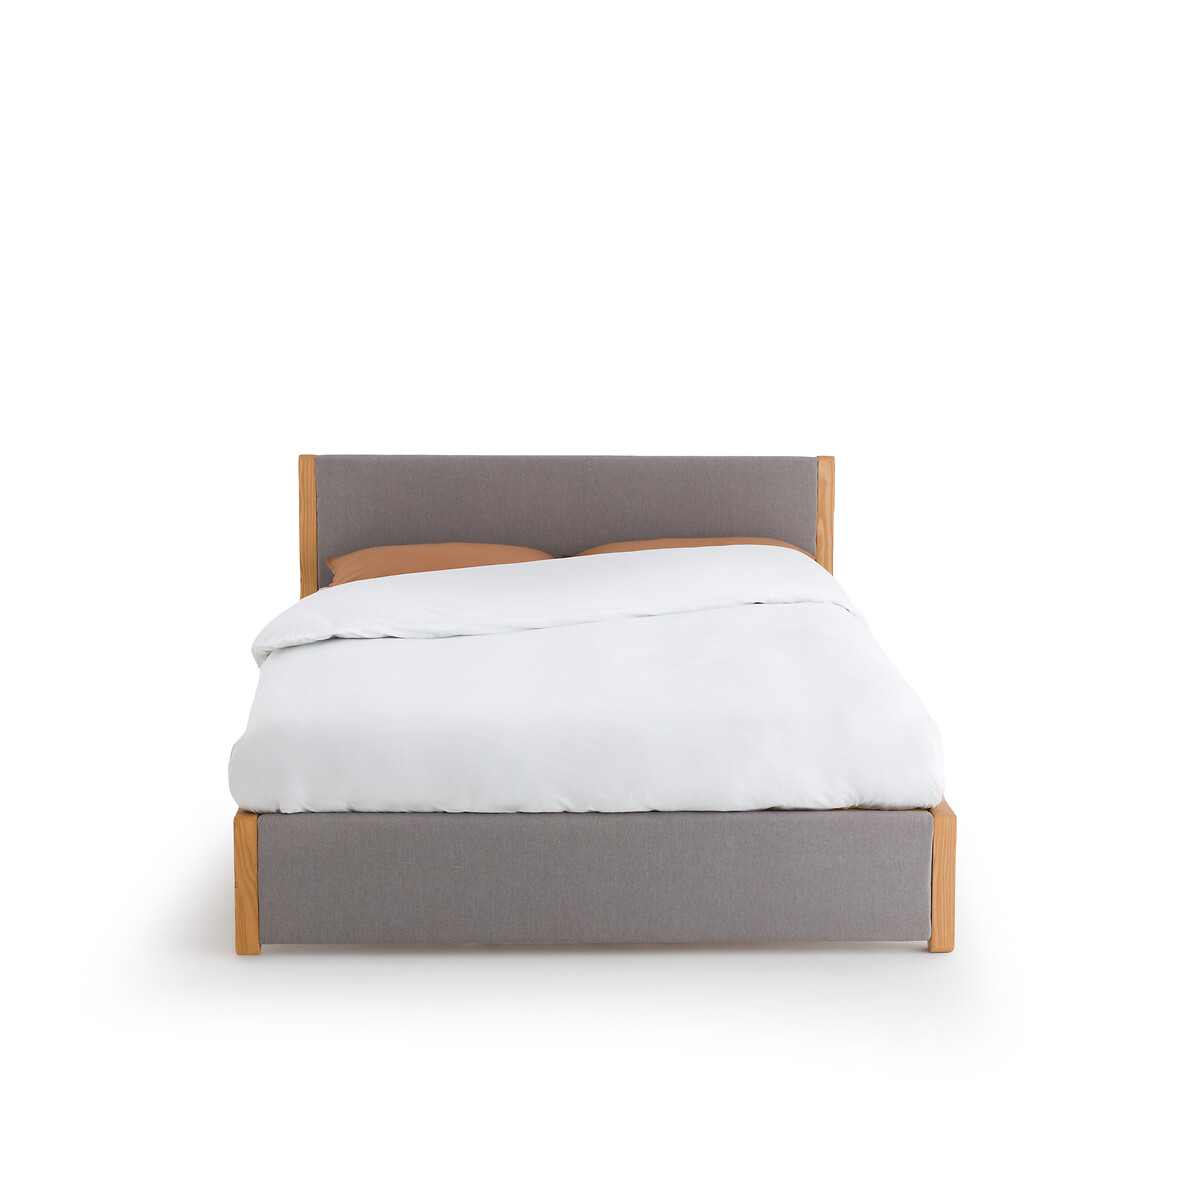 Кровать La Redoute С реечным дном ELORI 160 x 200 см серый, размер 160 x 200 см - фото 2